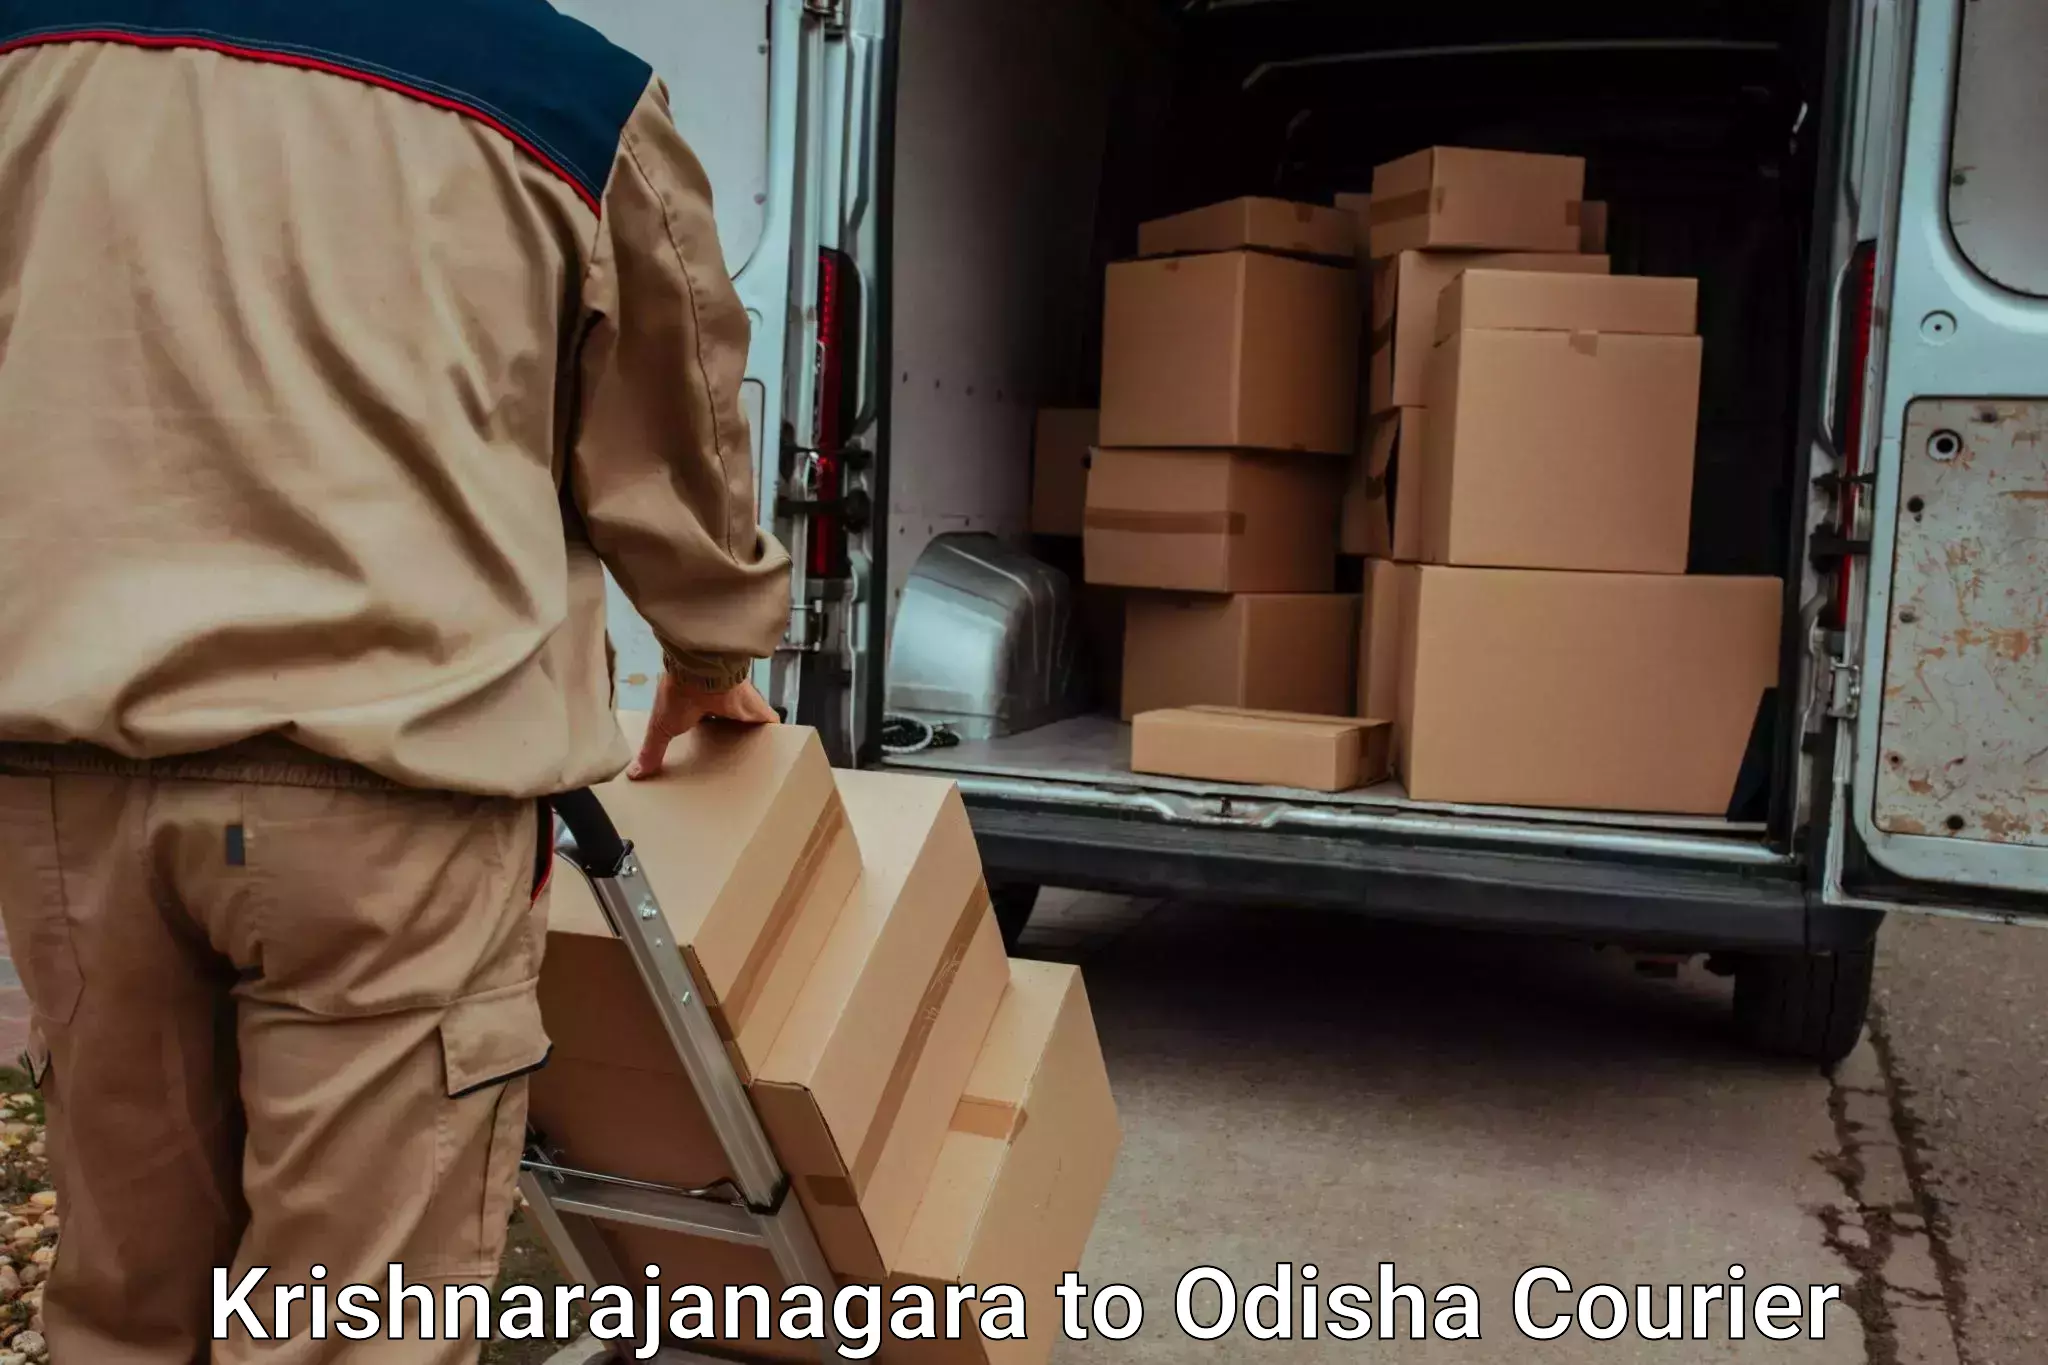 Moving and packing experts Krishnarajanagara to Baleswar